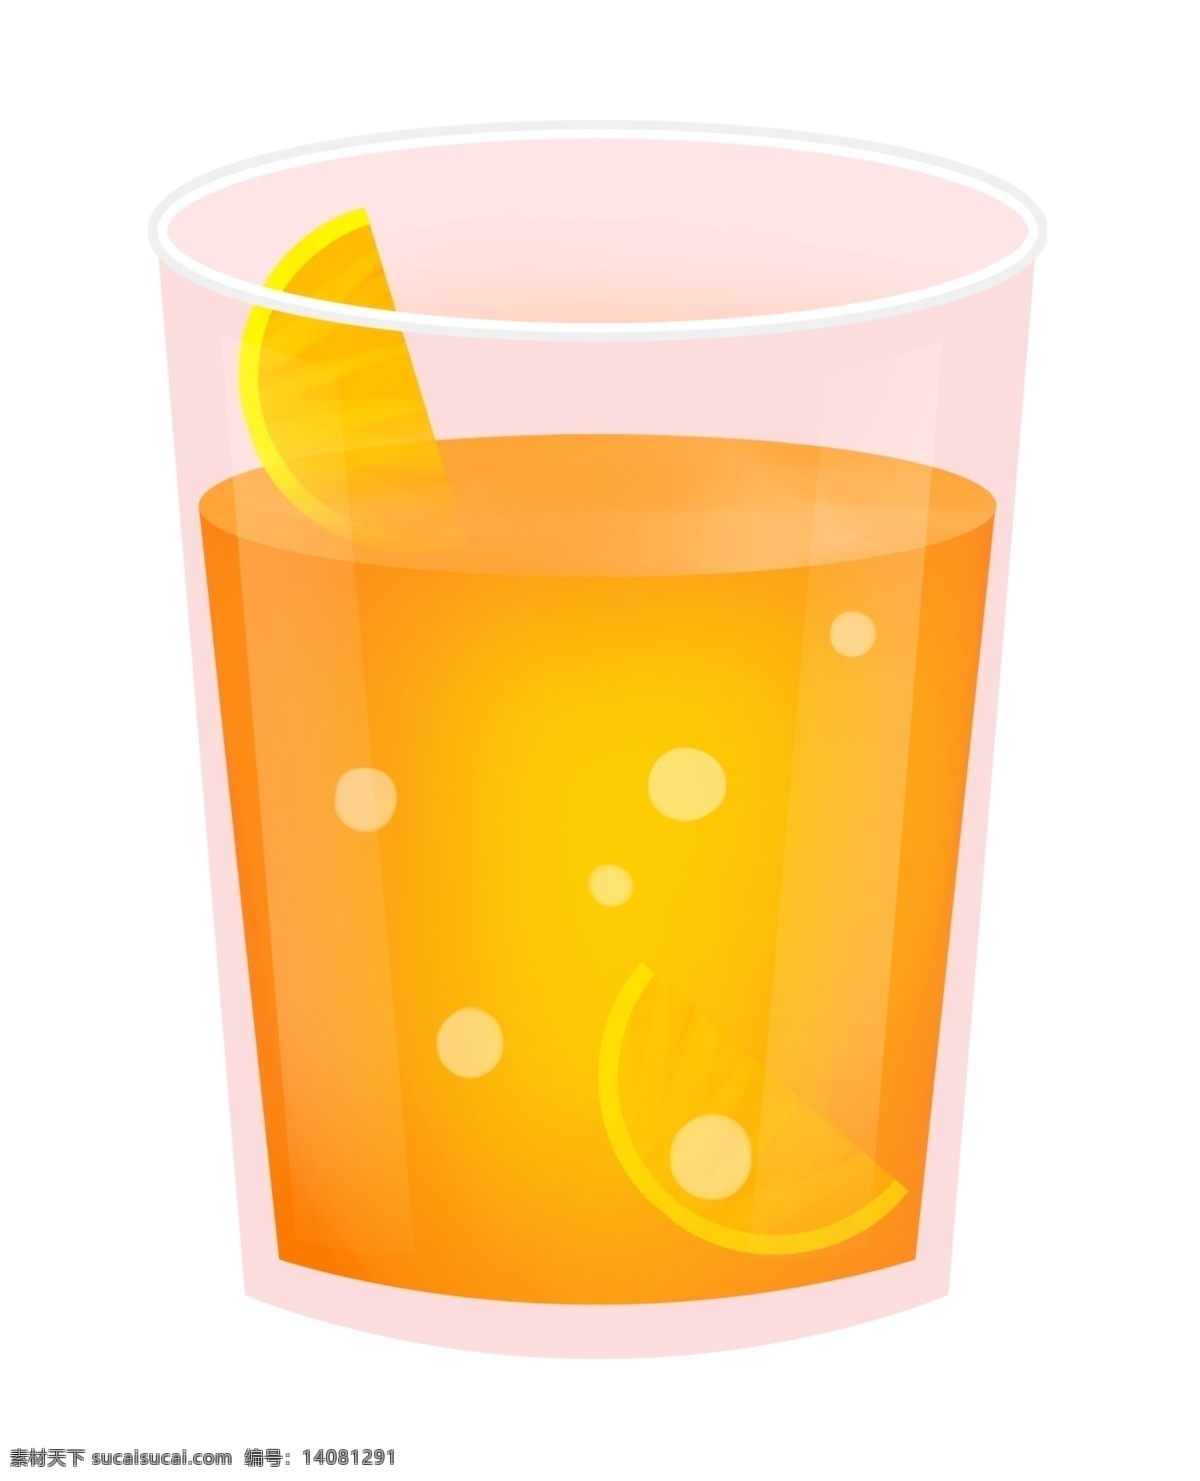 一杯美味橙汁 橙汁 果汁 饮料